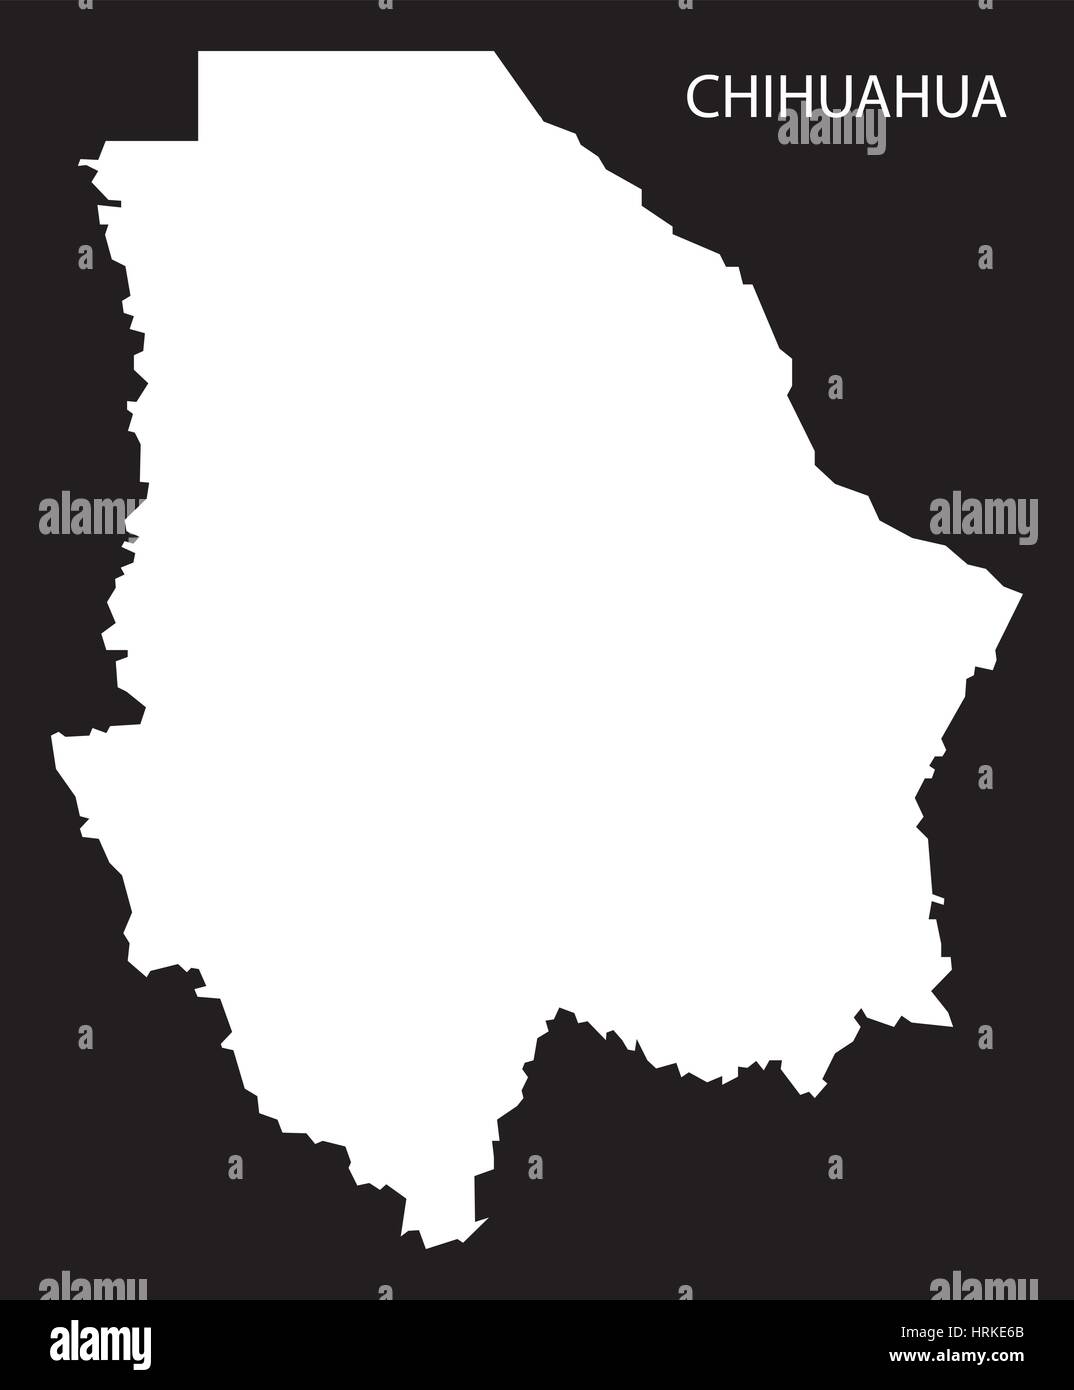 Chihuahua Mexiko Karte schwarz invertiert silhouette Stock Vektor